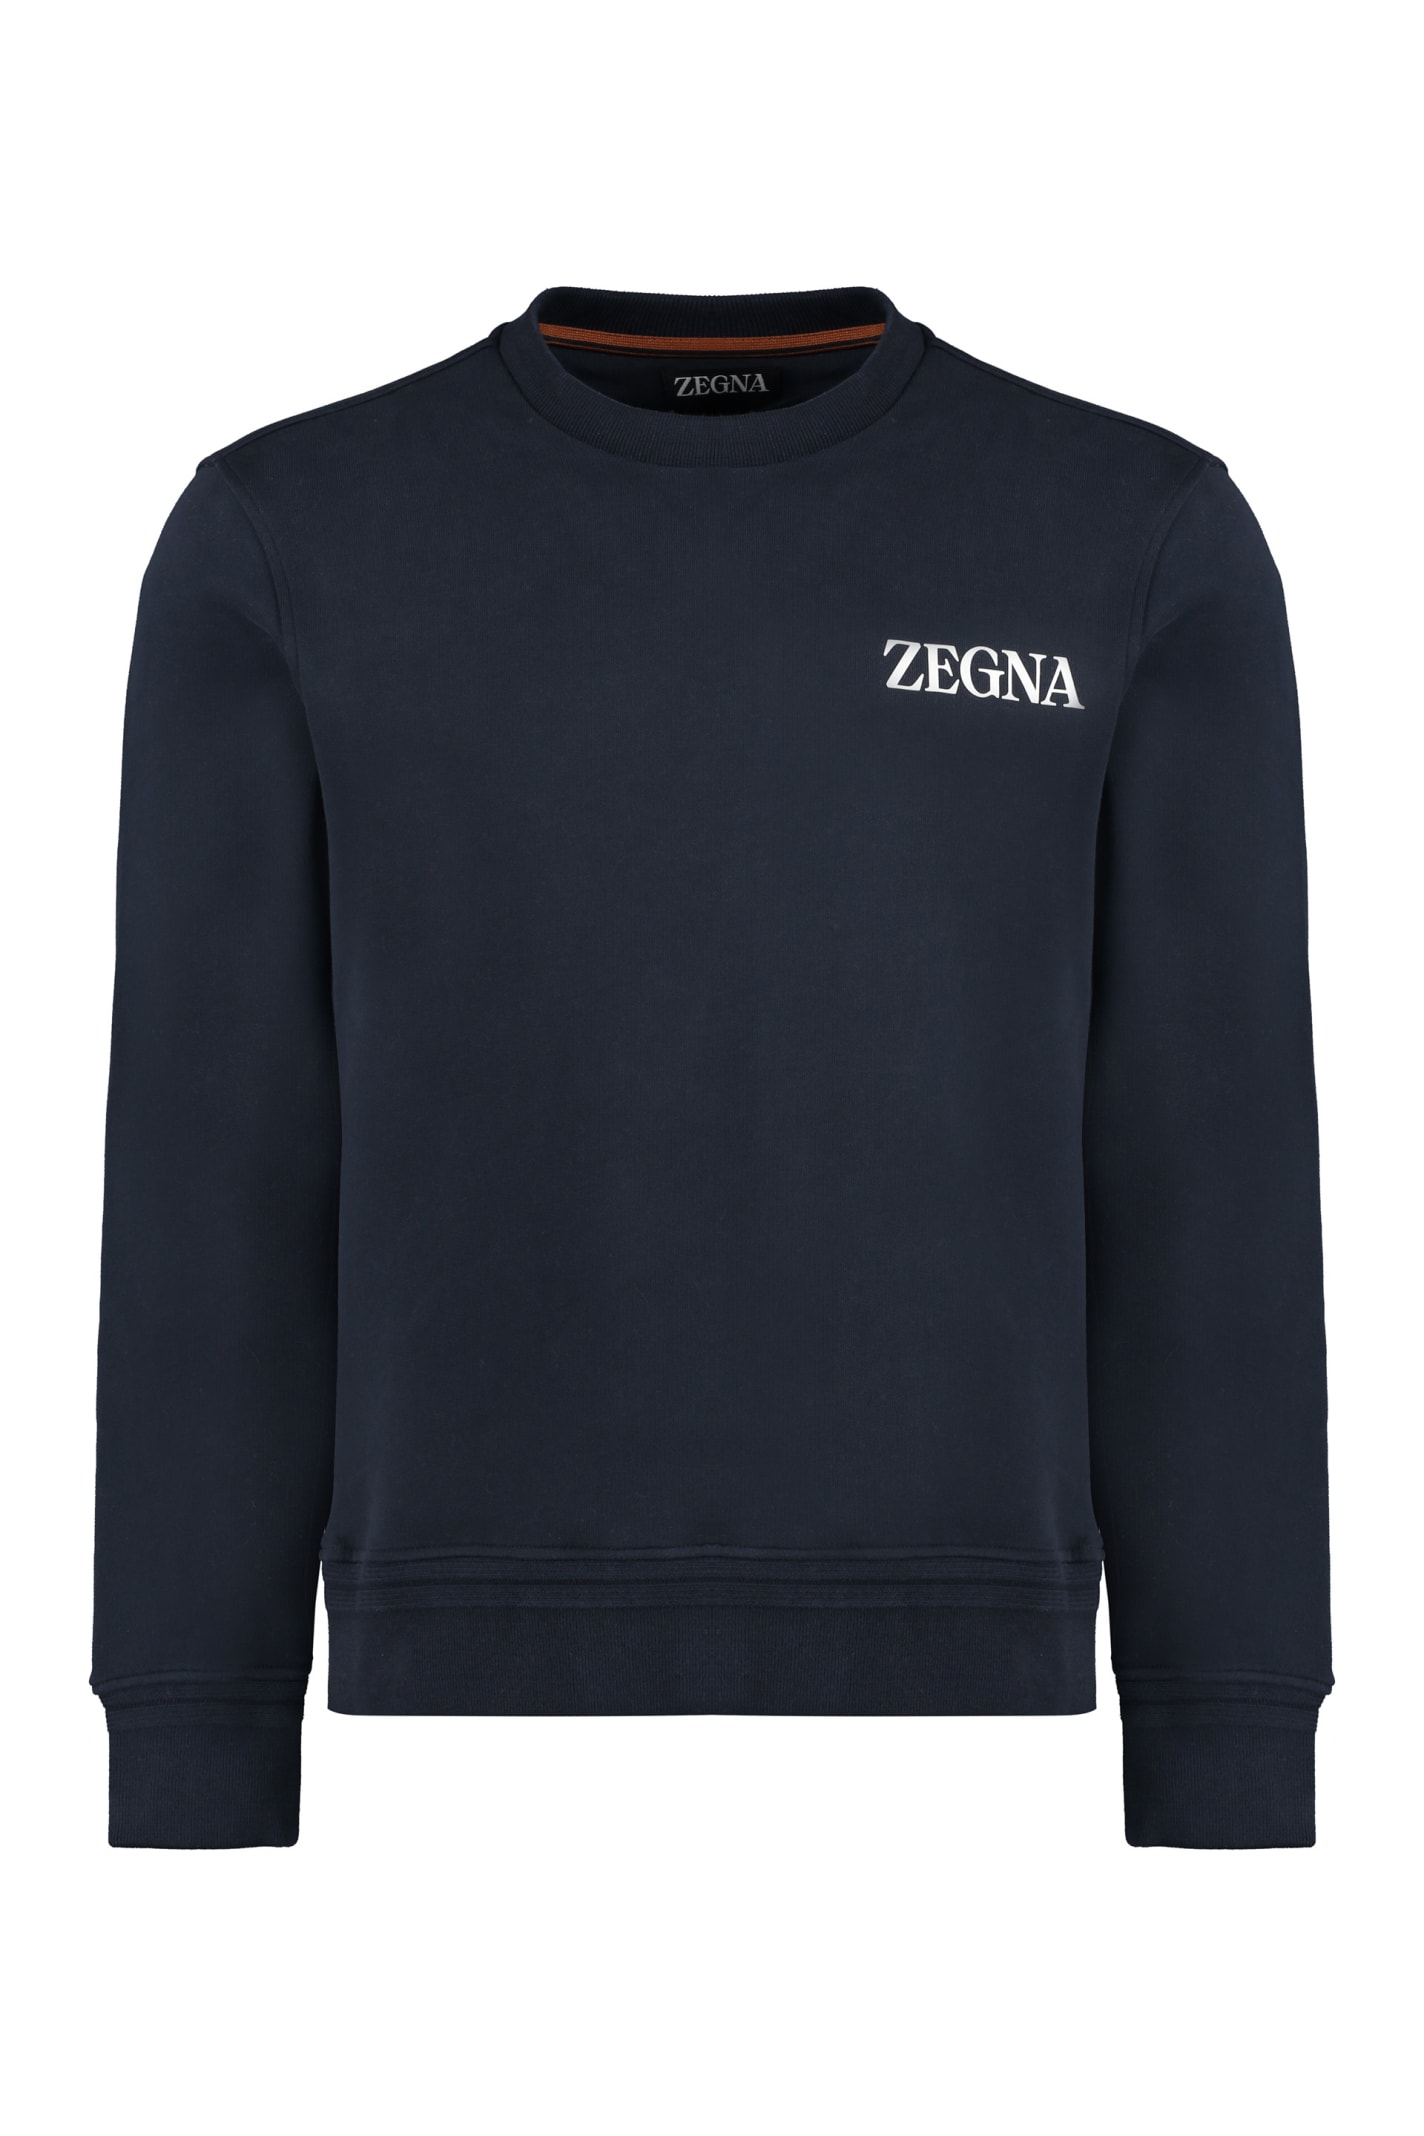 Ermenegildo Zegna Cotton Crew-neck Sweatshirt